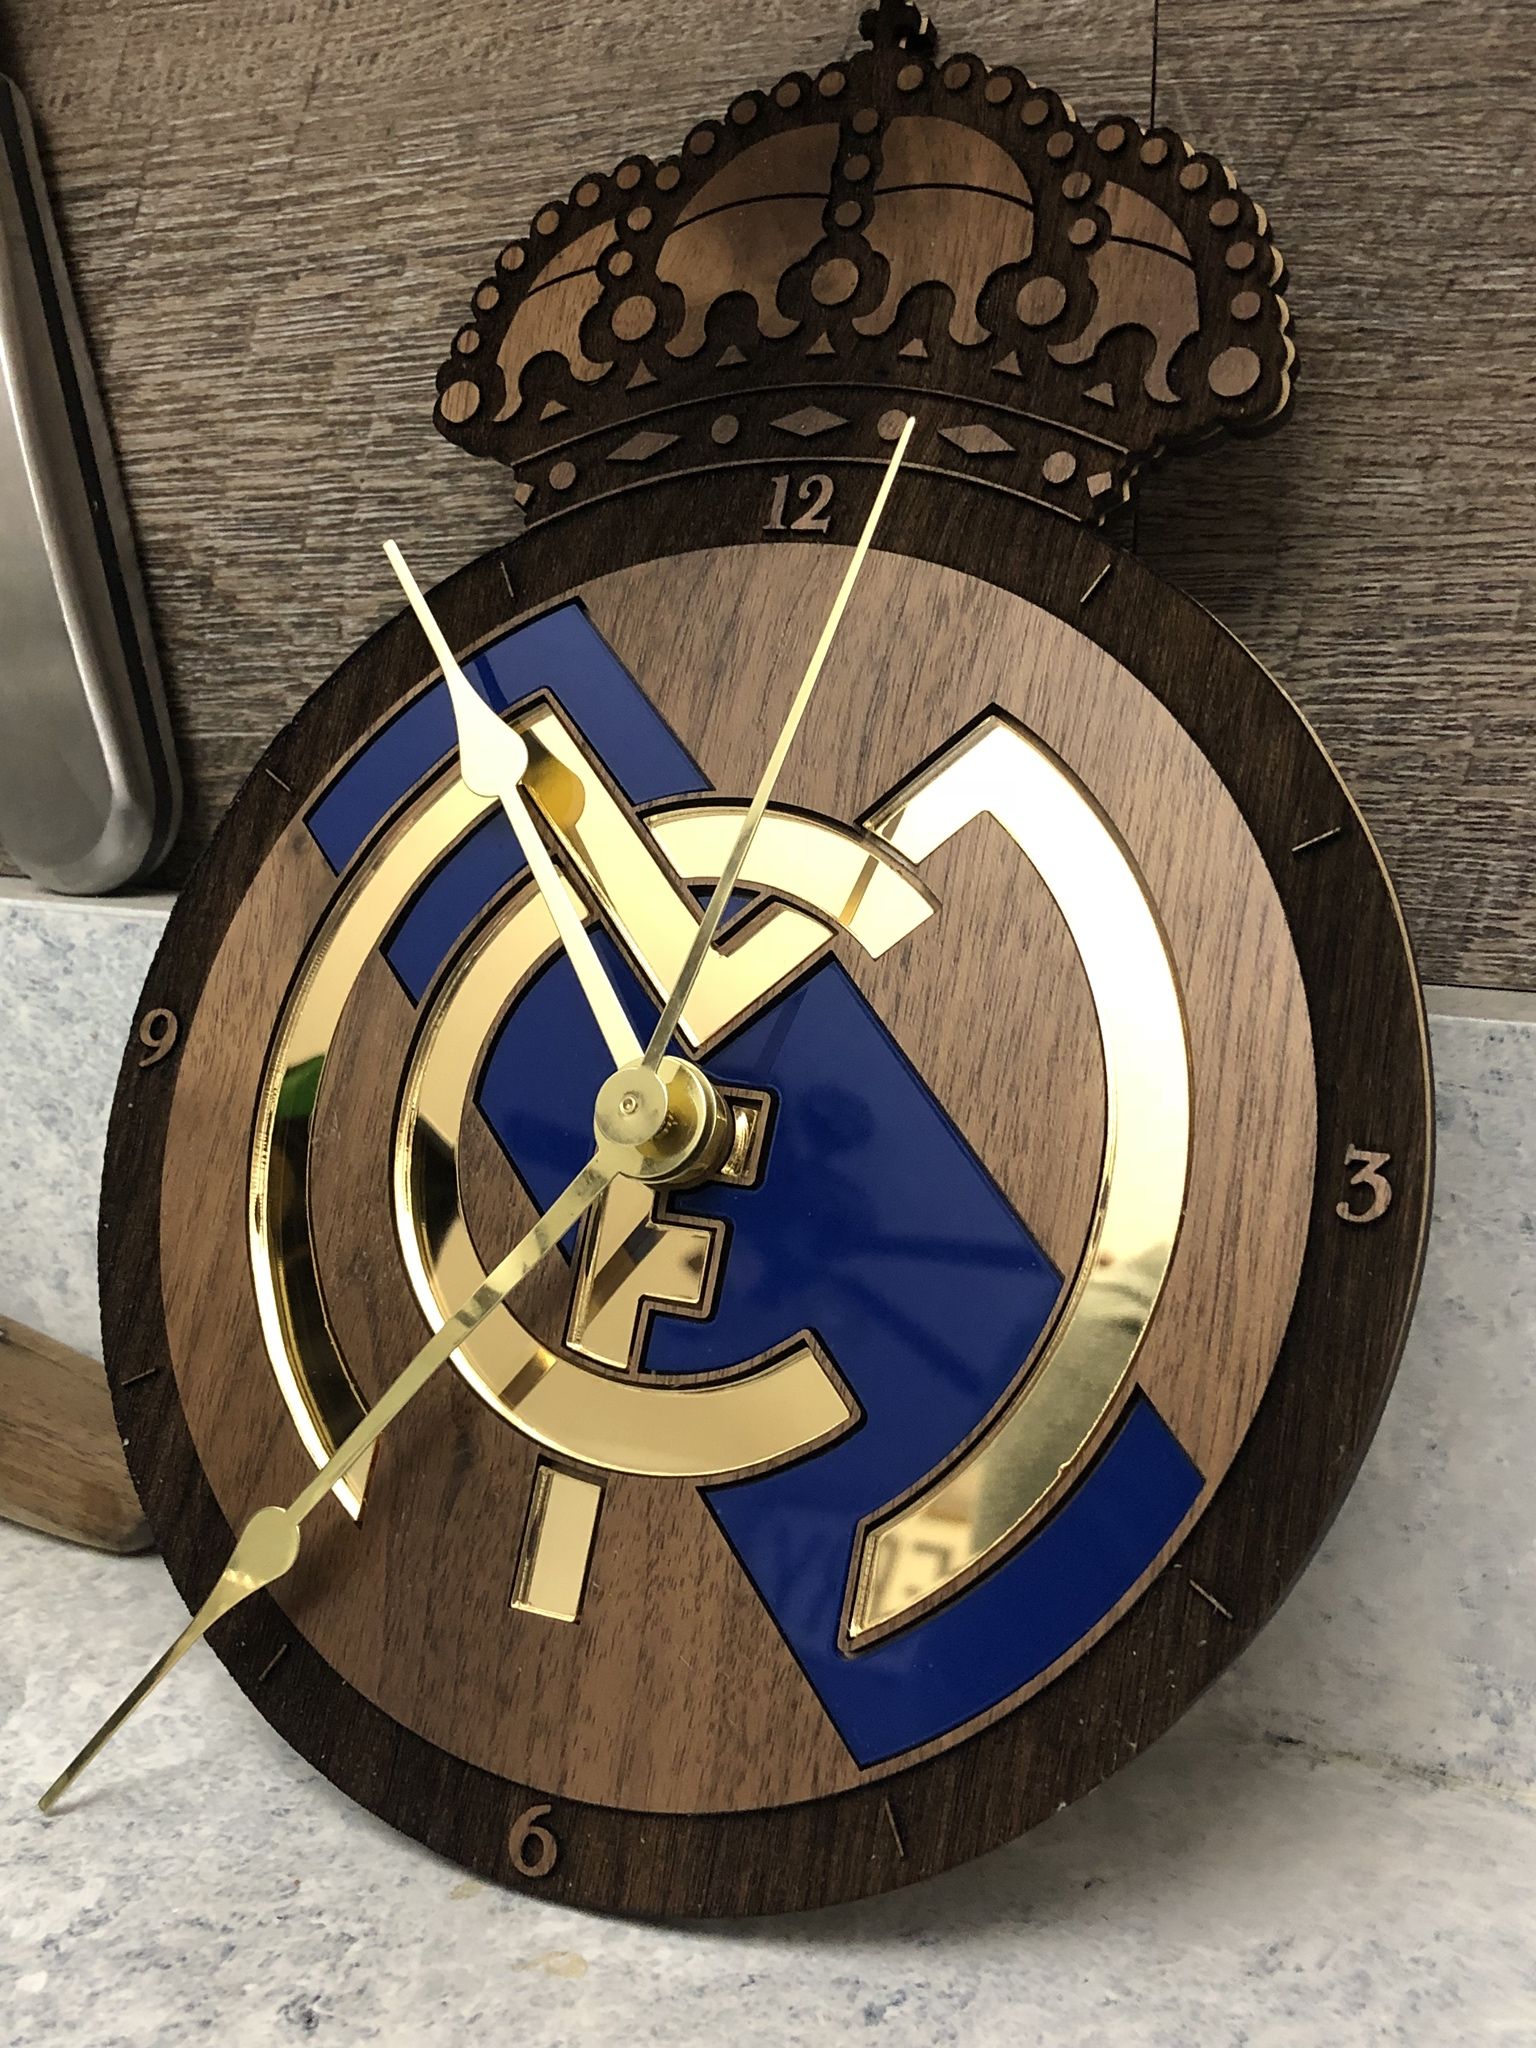 Made a custom Real clock Real madrid logo Real madrid Real